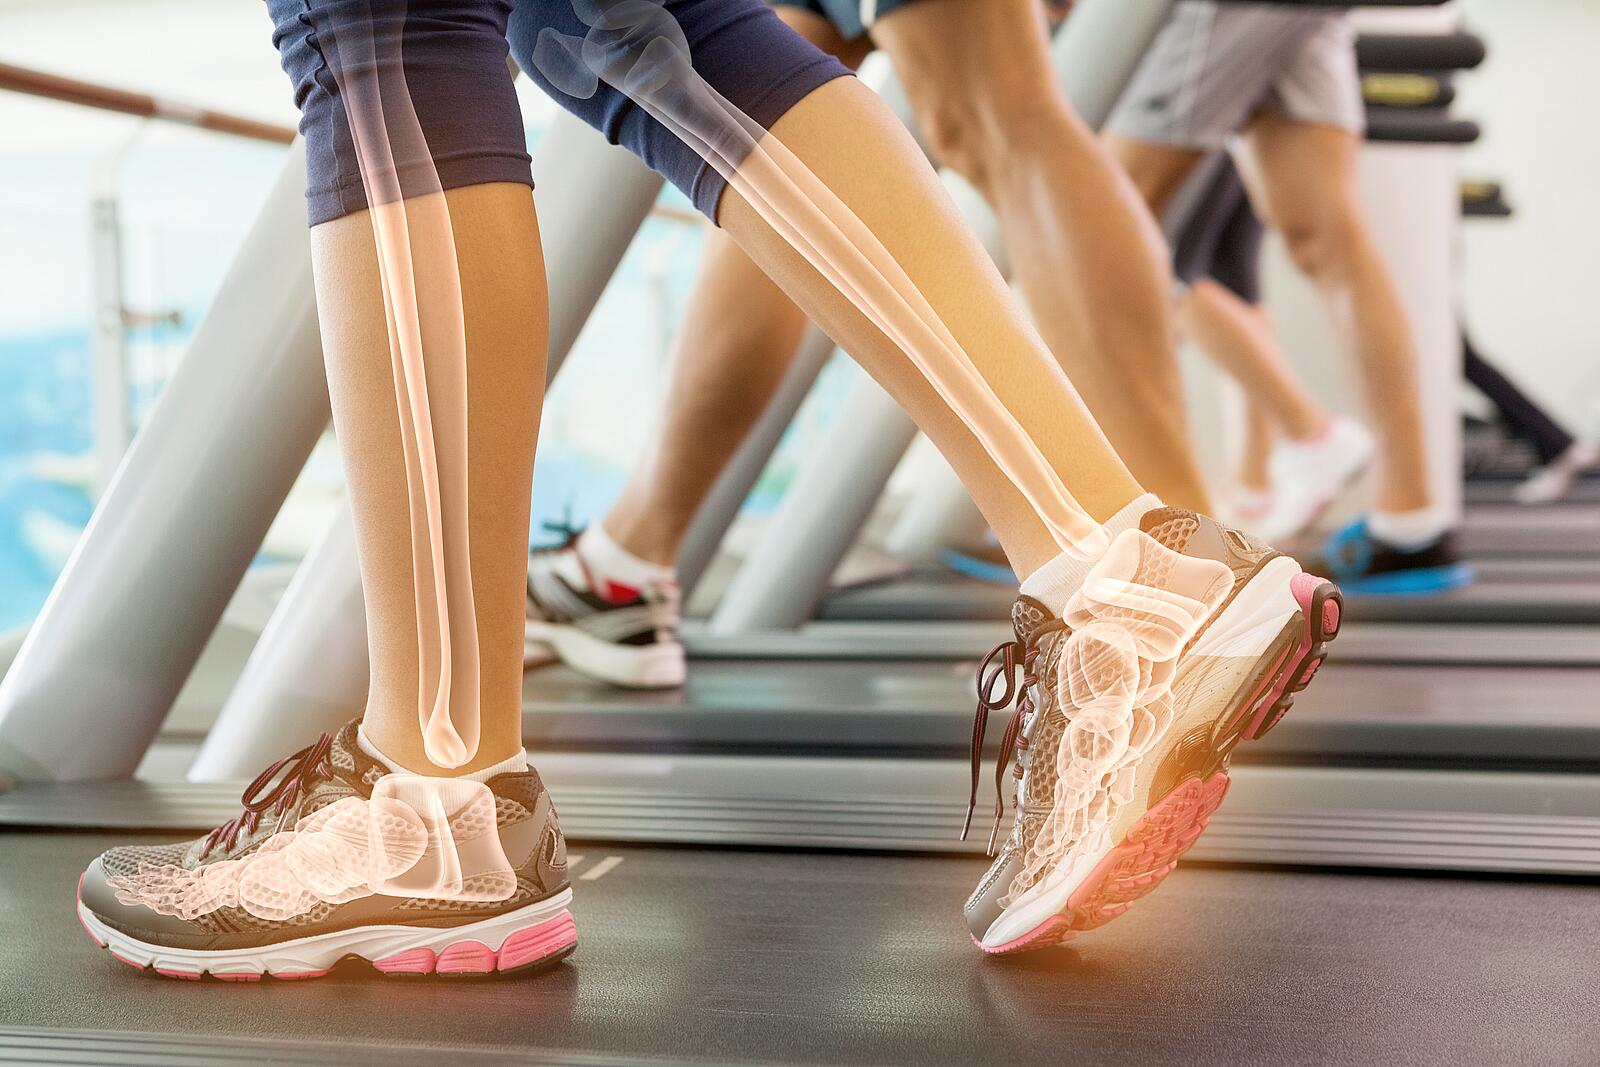 Beine von Läuferinnen auf einem Laufbank - Knochendichtemessung